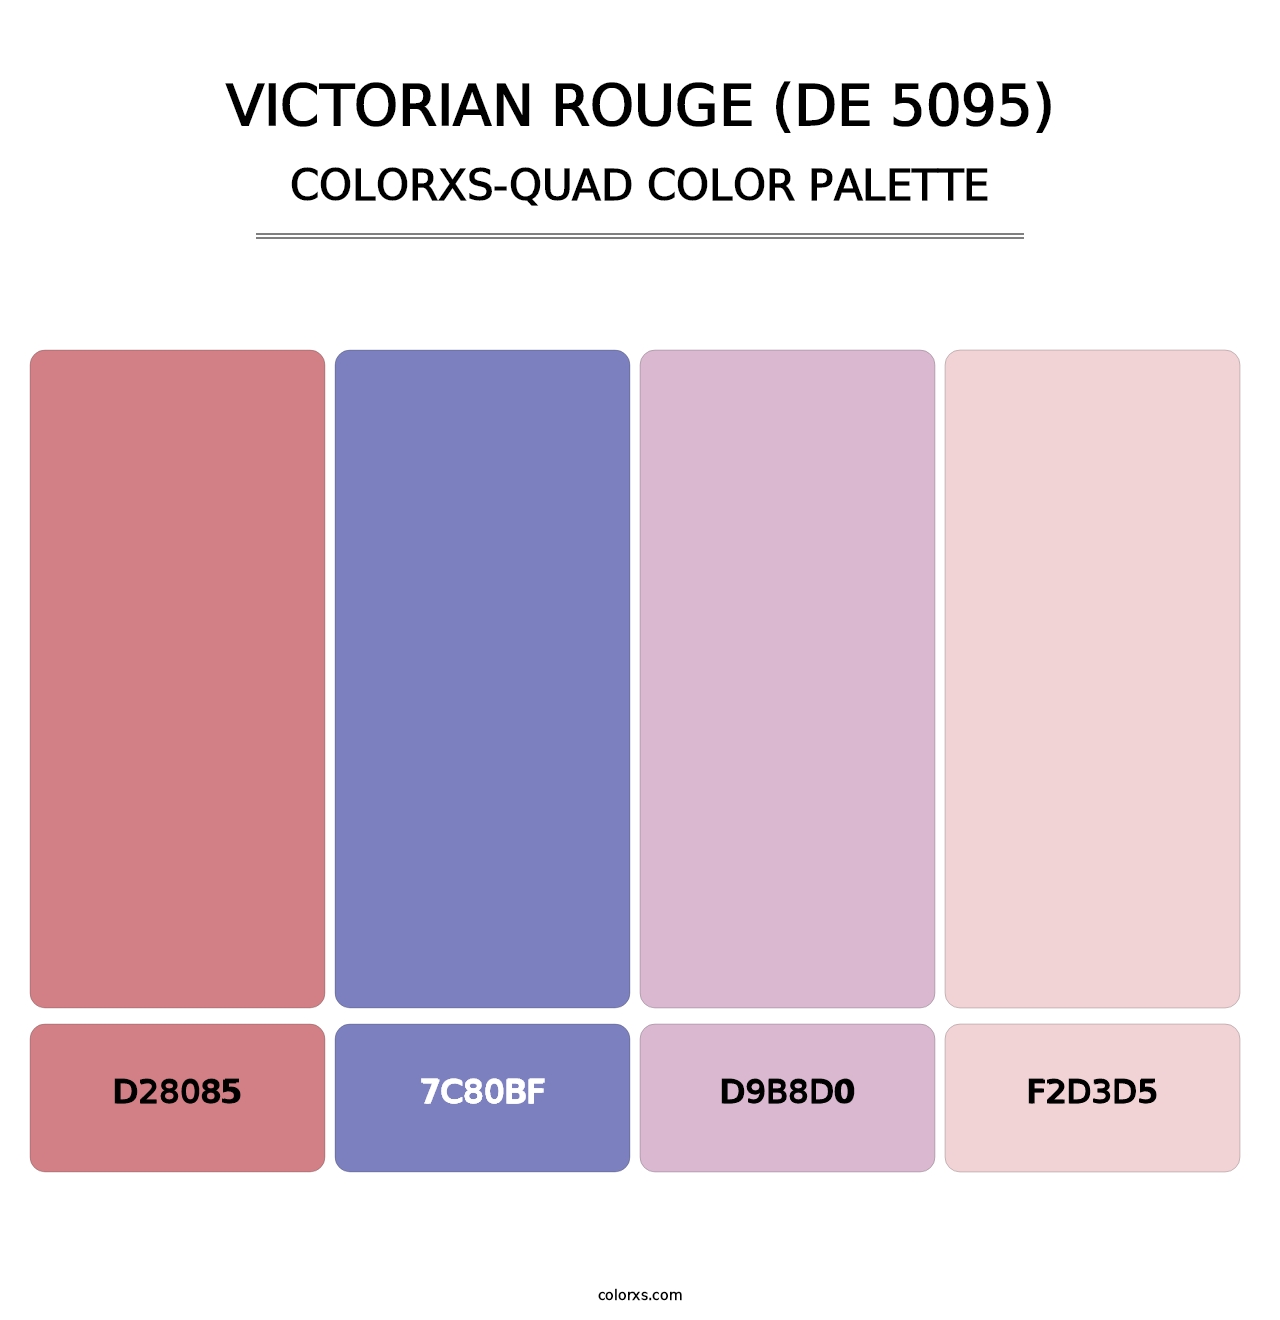 Victorian Rouge (DE 5095) - Colorxs Quad Palette